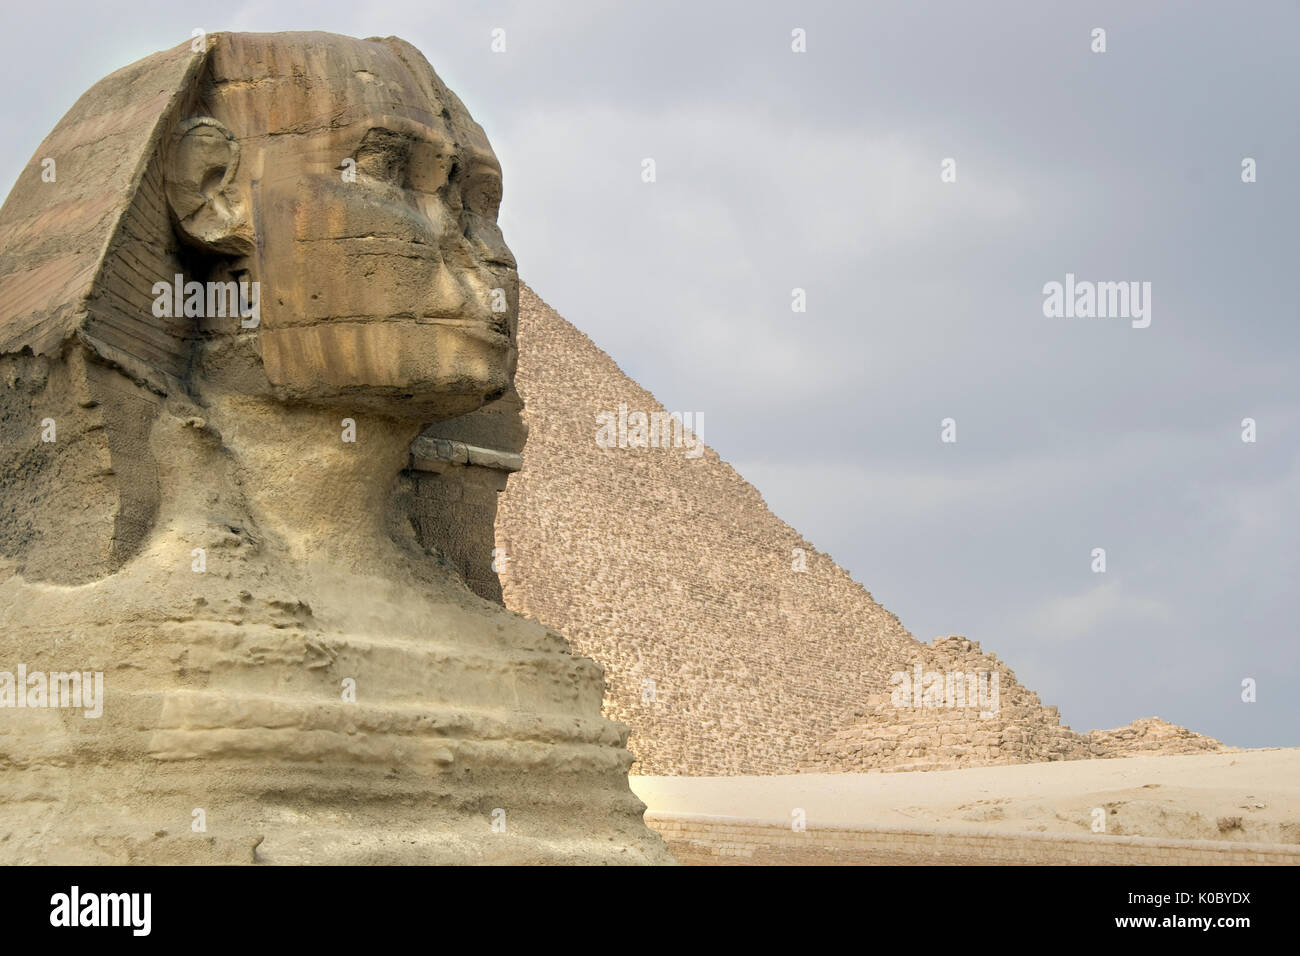 La sfinge a guardia delle piramidi sul sito di Giza plateu del Cairo in Egitto. Foto Stock